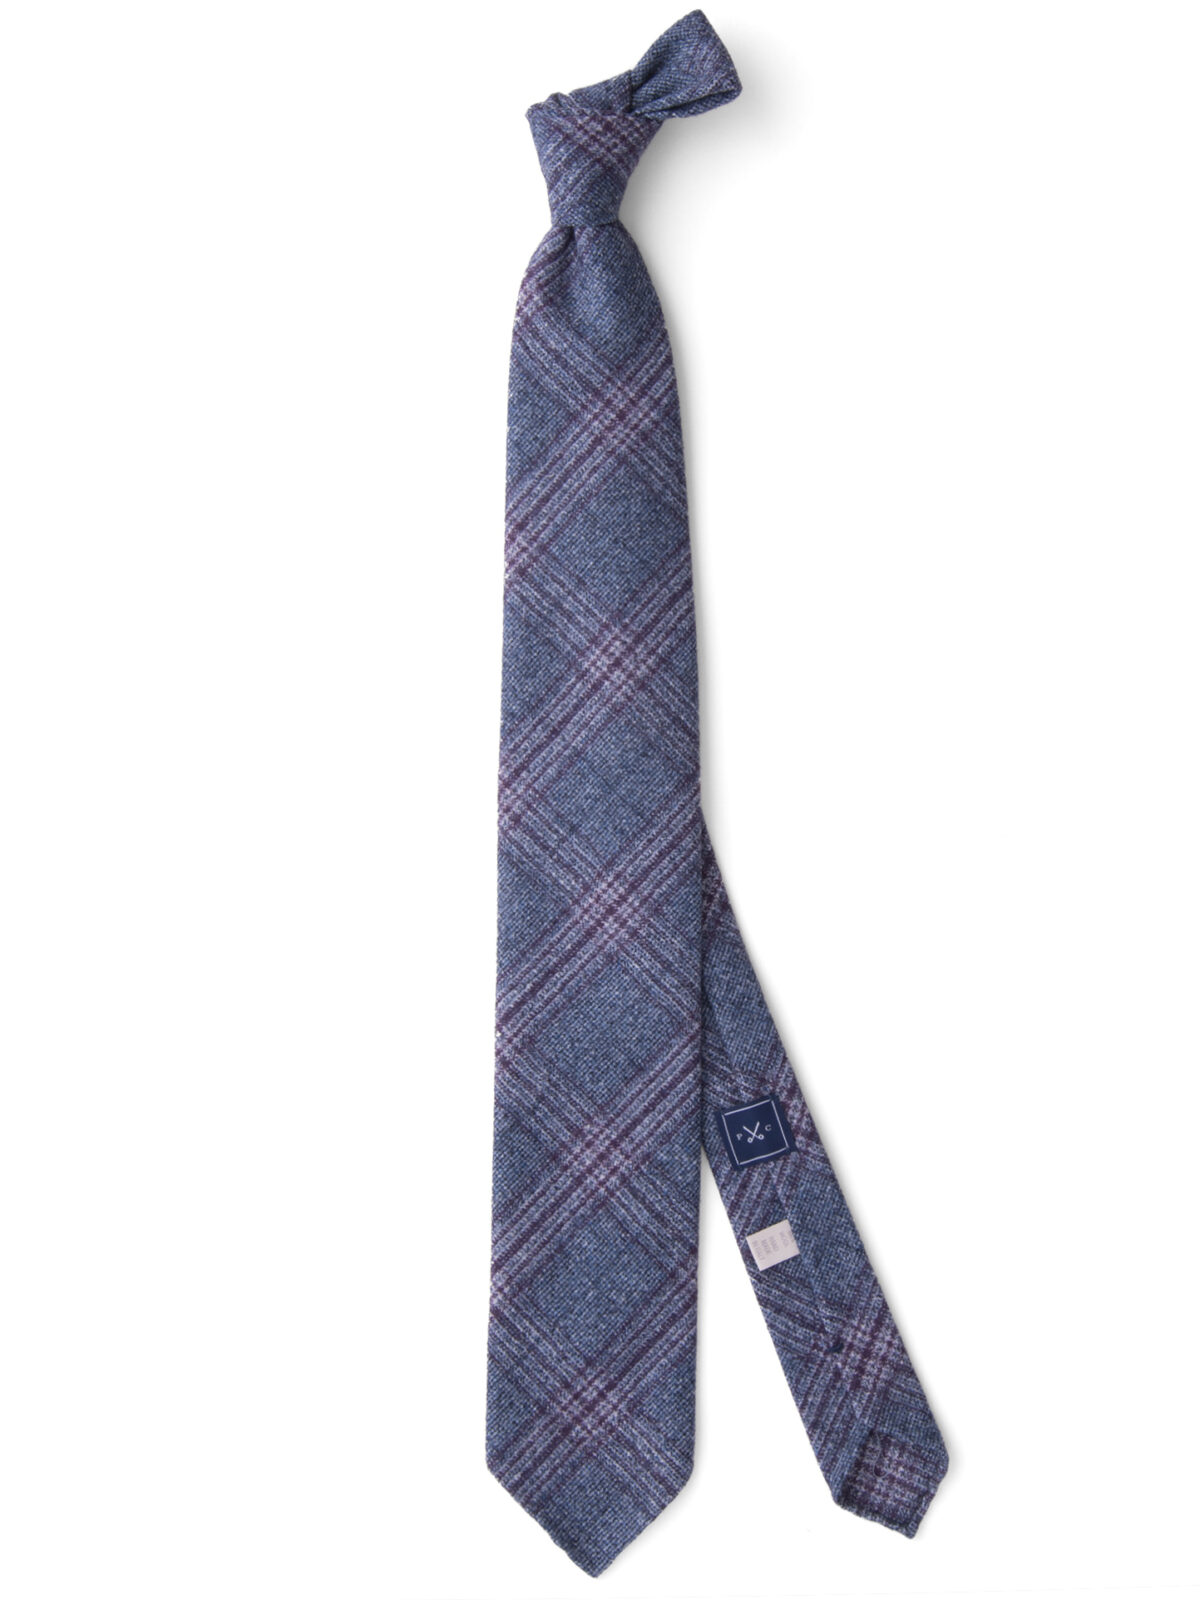 Grey and Scarlet Wool Plaid Tie